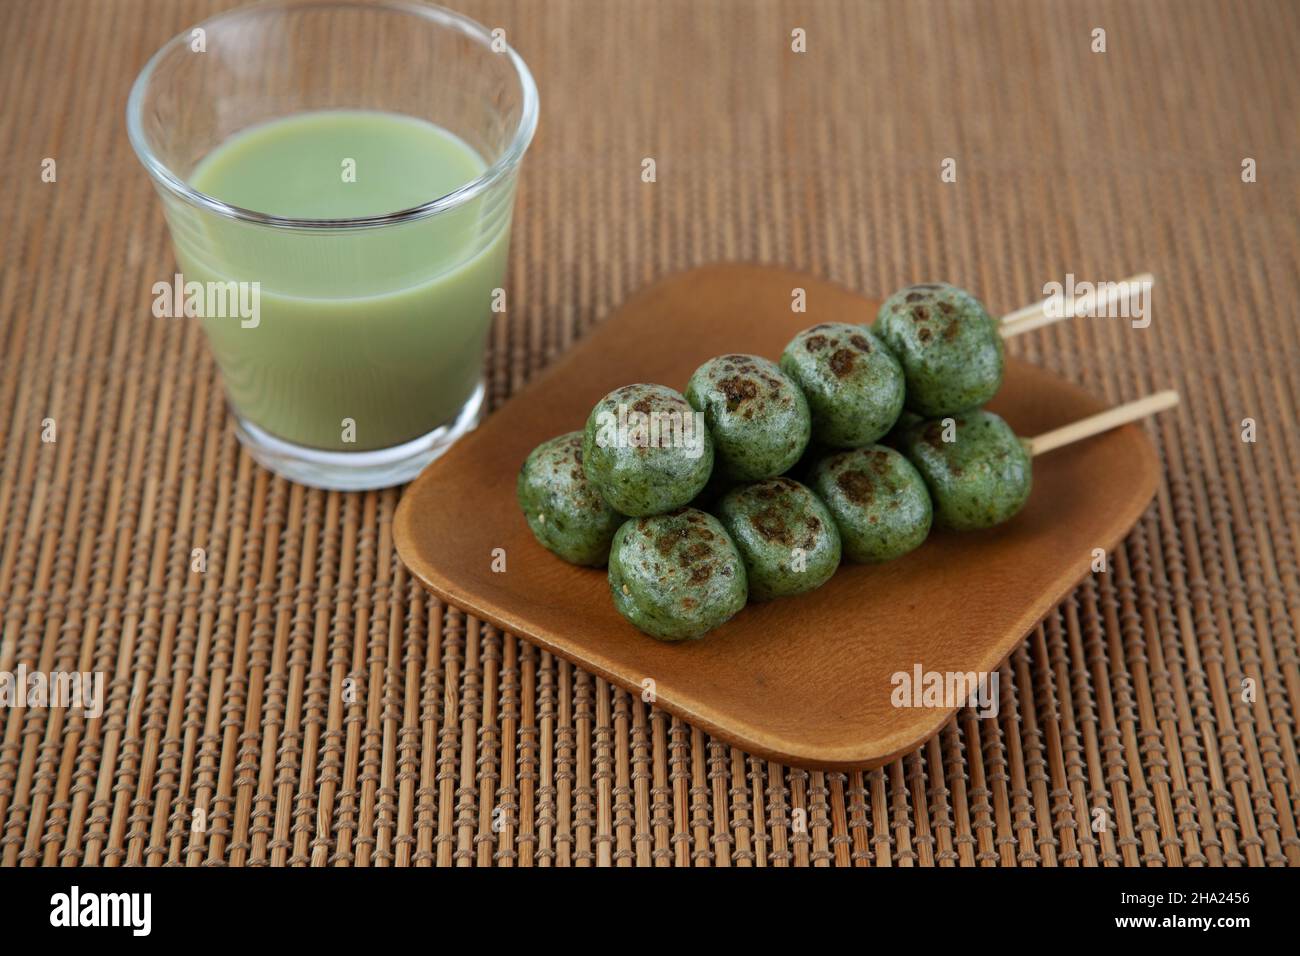 Dango Beifuß Knödel Reiskuchen Japanische Süßwaren Matcha grüner Milchtee isoliert auf dem Tisch Stockfoto